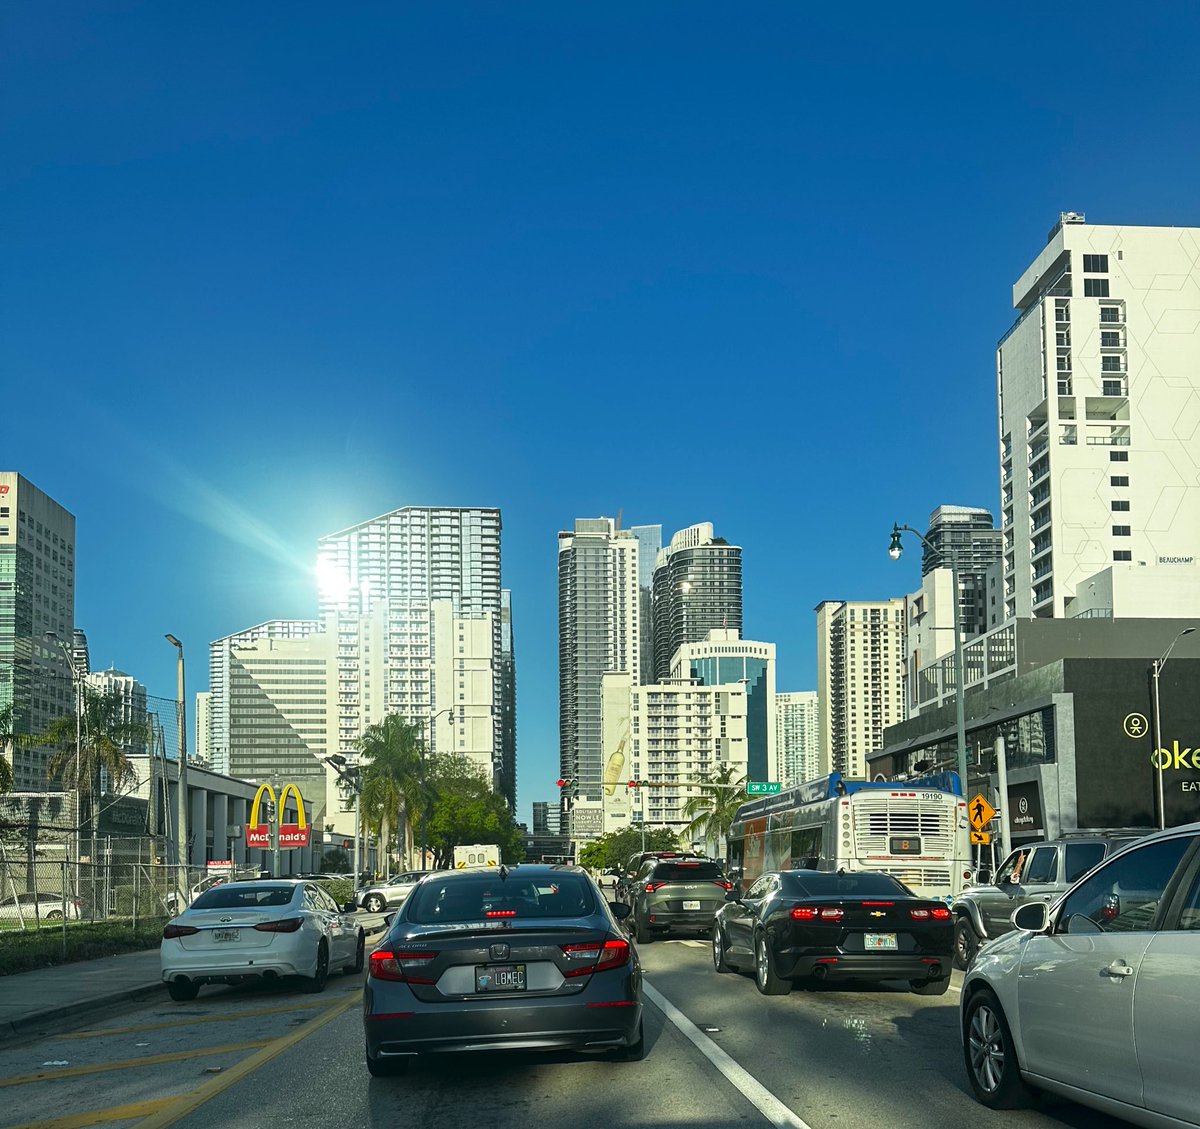 Miami, esa ciudad que es La Capital del sol.  #ILoveMiami #Miami #MiamiDowntown